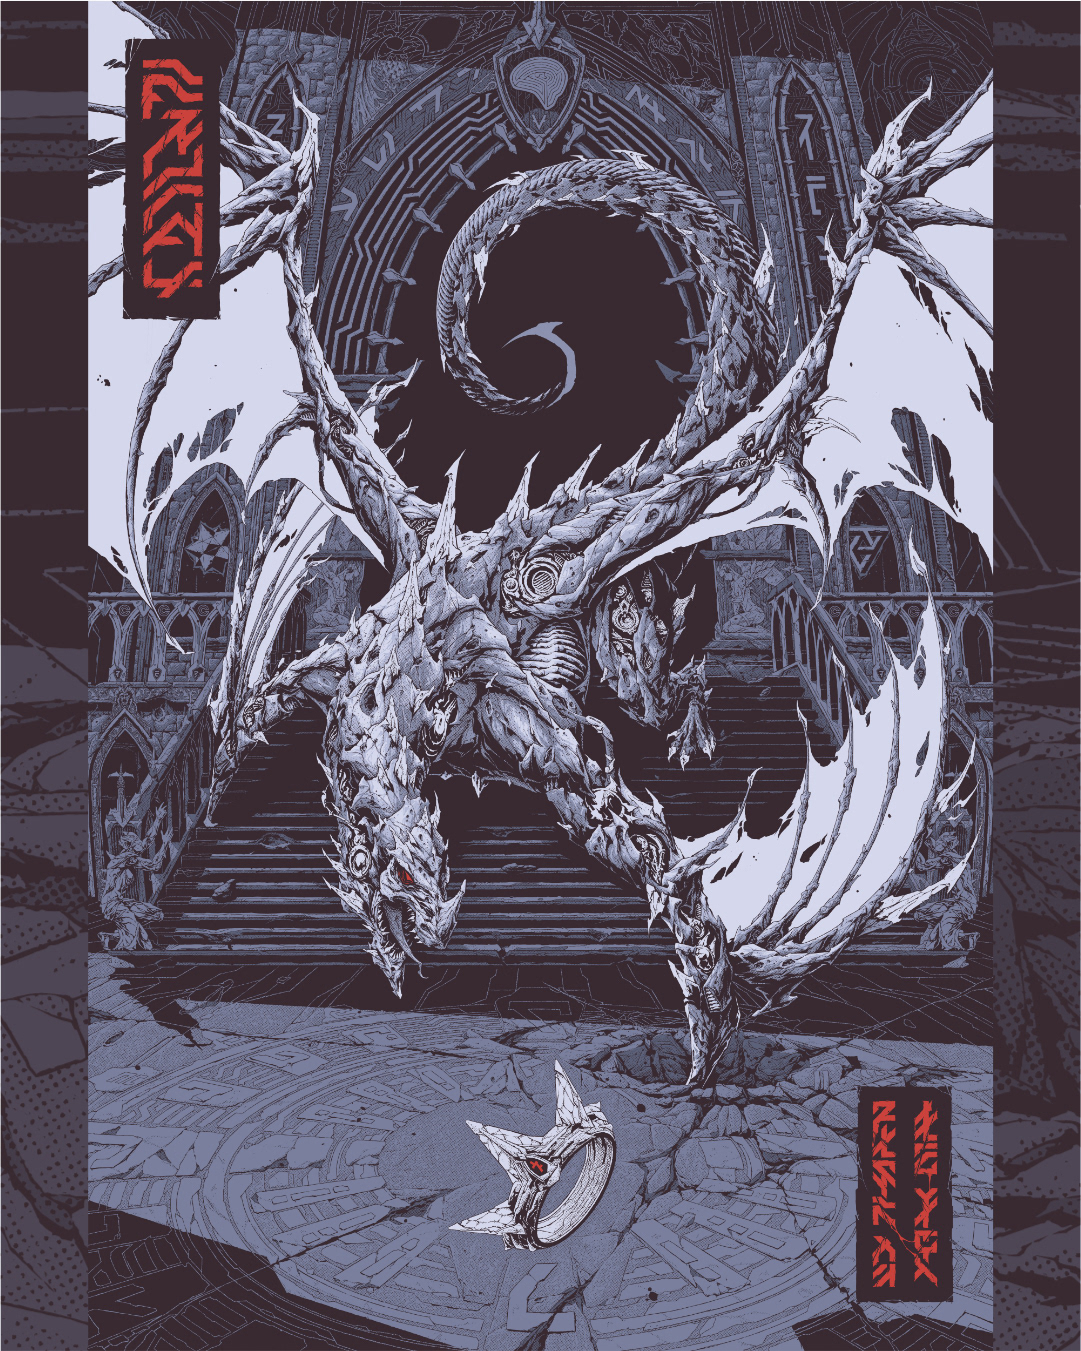 concept art Cyberpunk Cyborg dragon FUTURISM graphic art lovecraft poster screenprint weird